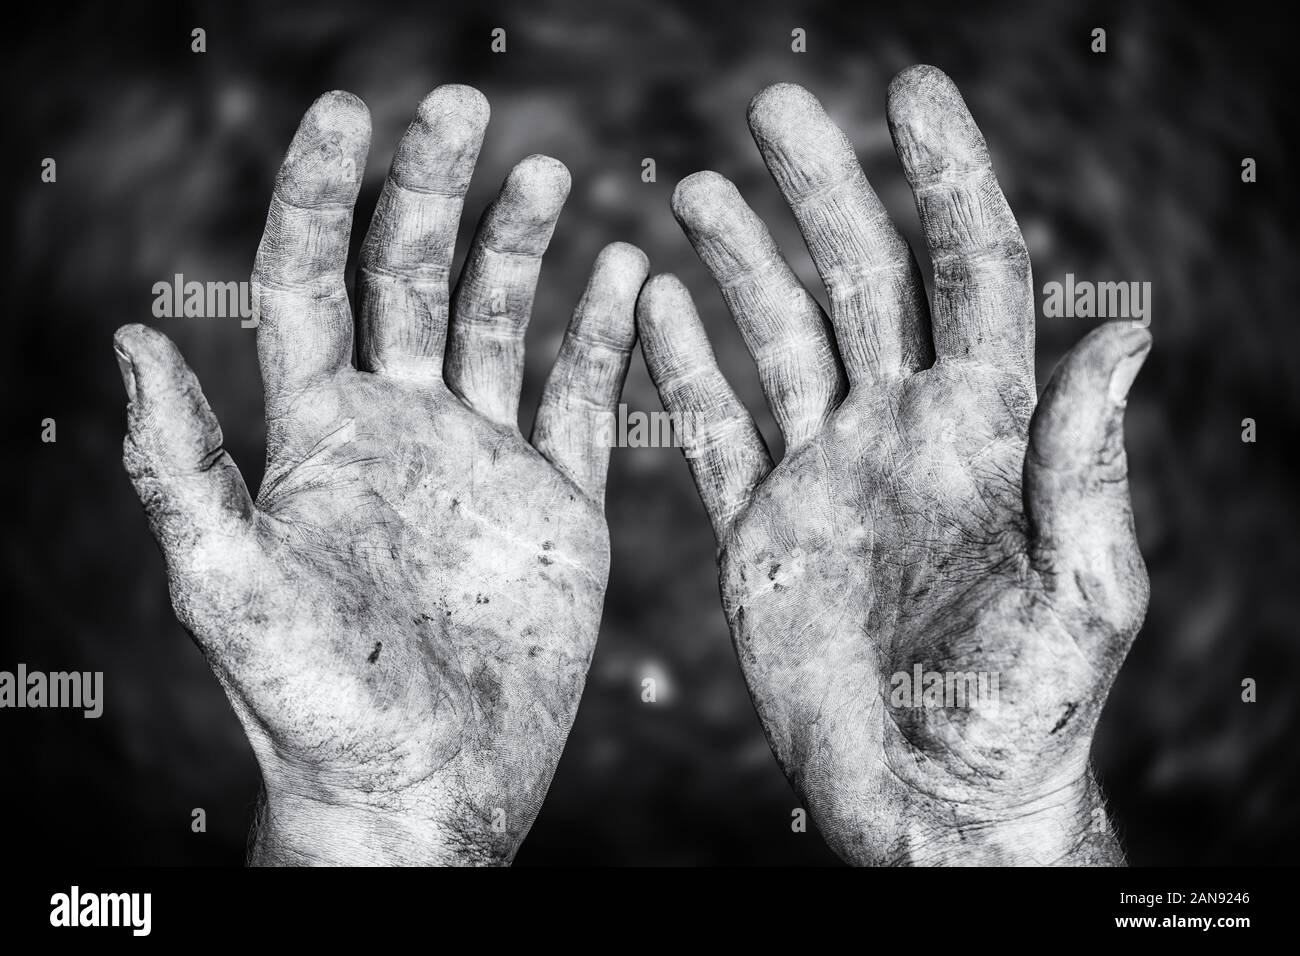 Schmutzige männliche Hände nach harter körperlicher Arbeit in einem schwarz-weißen Schuss Stockfoto